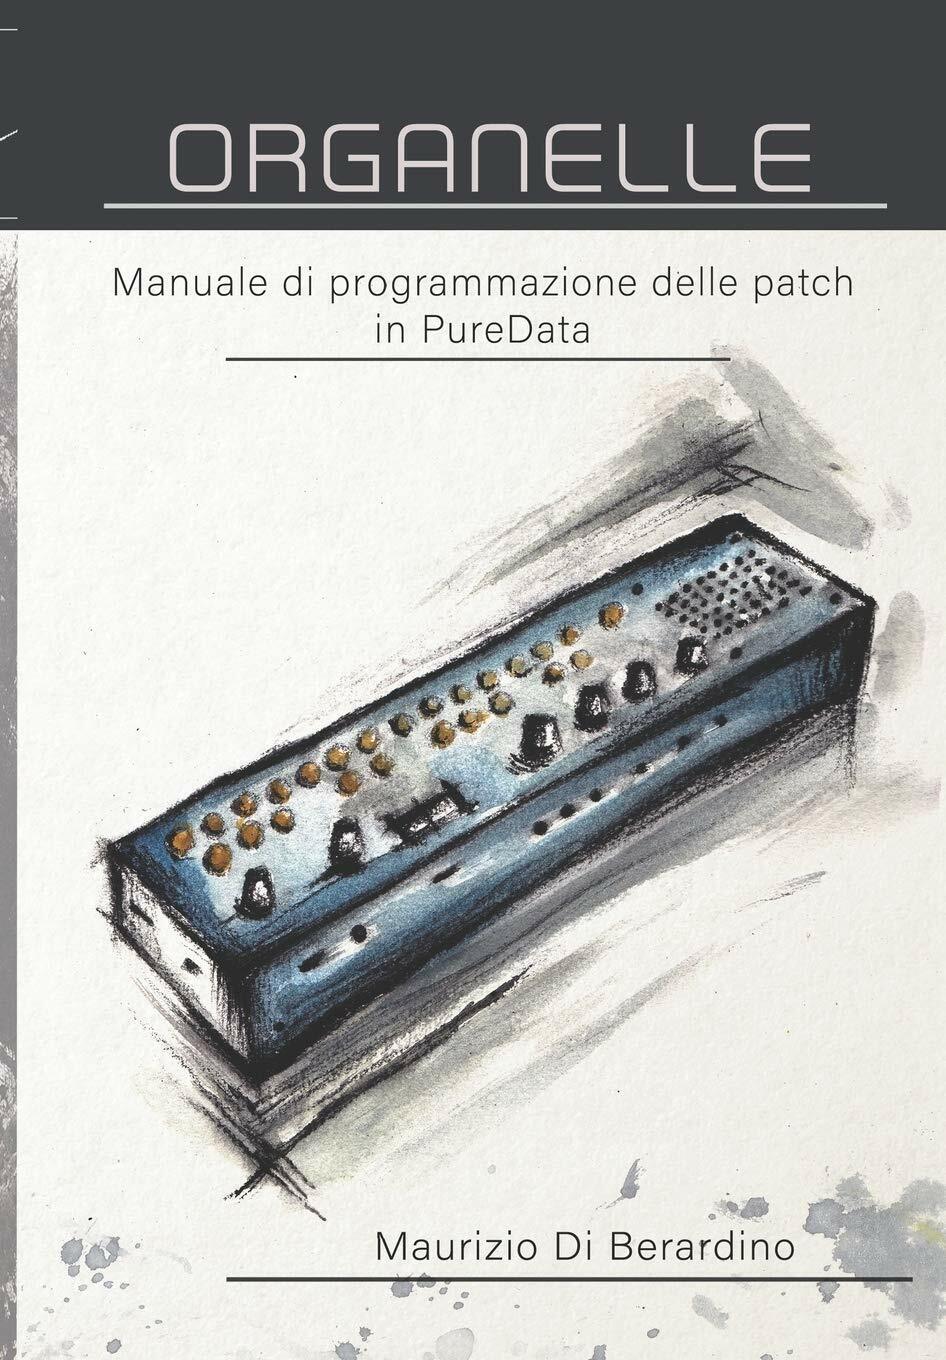 Organelle Manuale di programmazione delle patch in PureData di Maurizio Di Berar